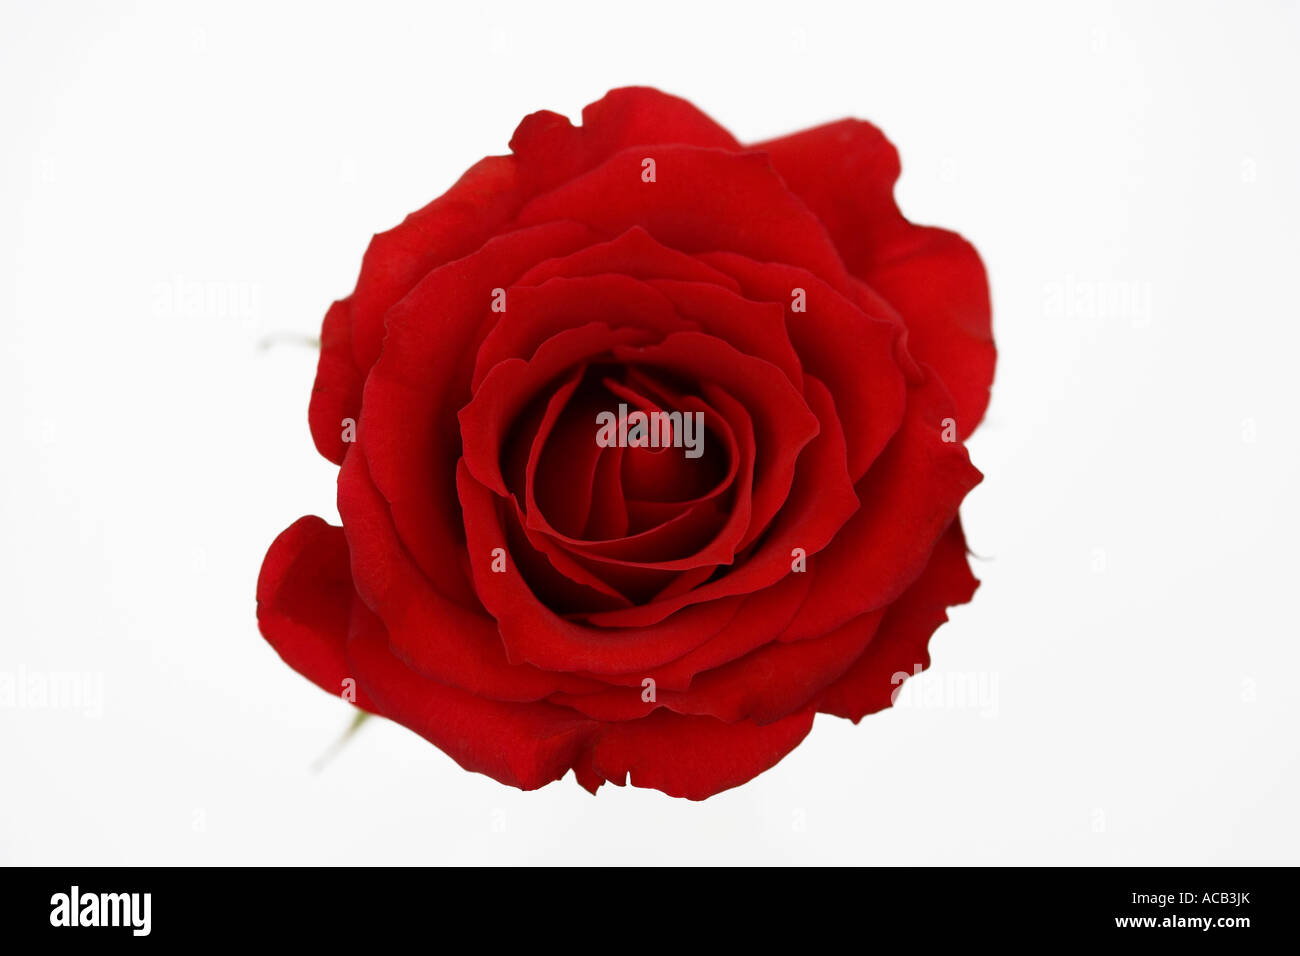 Einzelne rote Rose von oben gegen einen sauberen, weißen Hintergrund erschossen Stockfoto